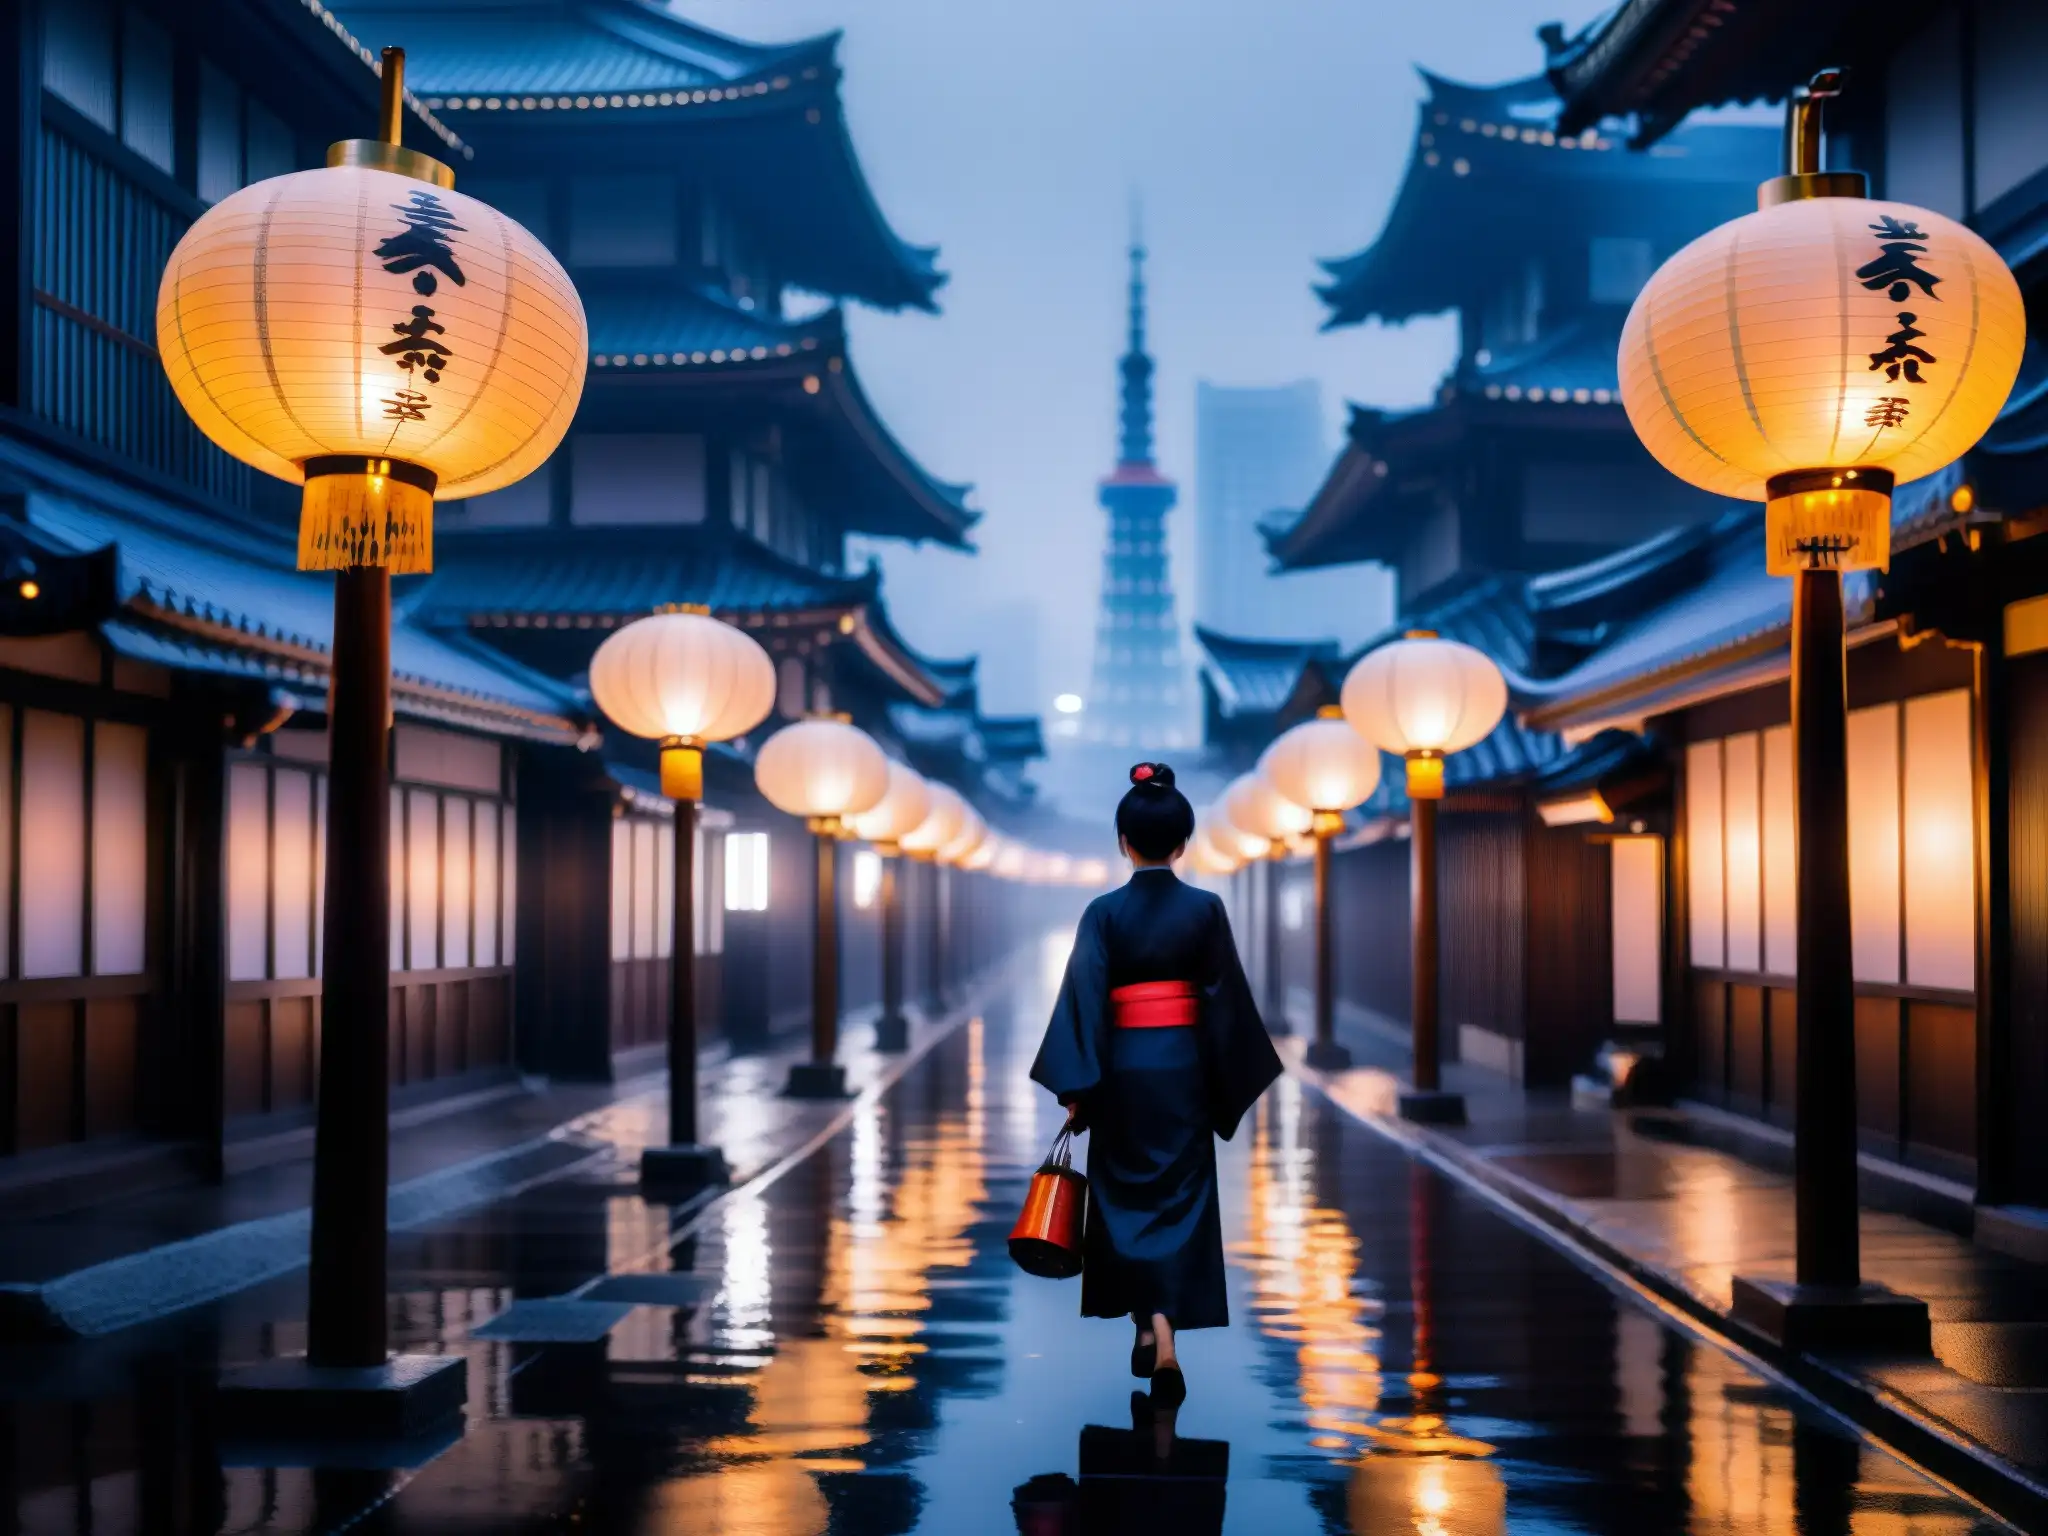 Un misterioso callejón en Tokio de noche, con linternas japonesas creando un aura fantasmal